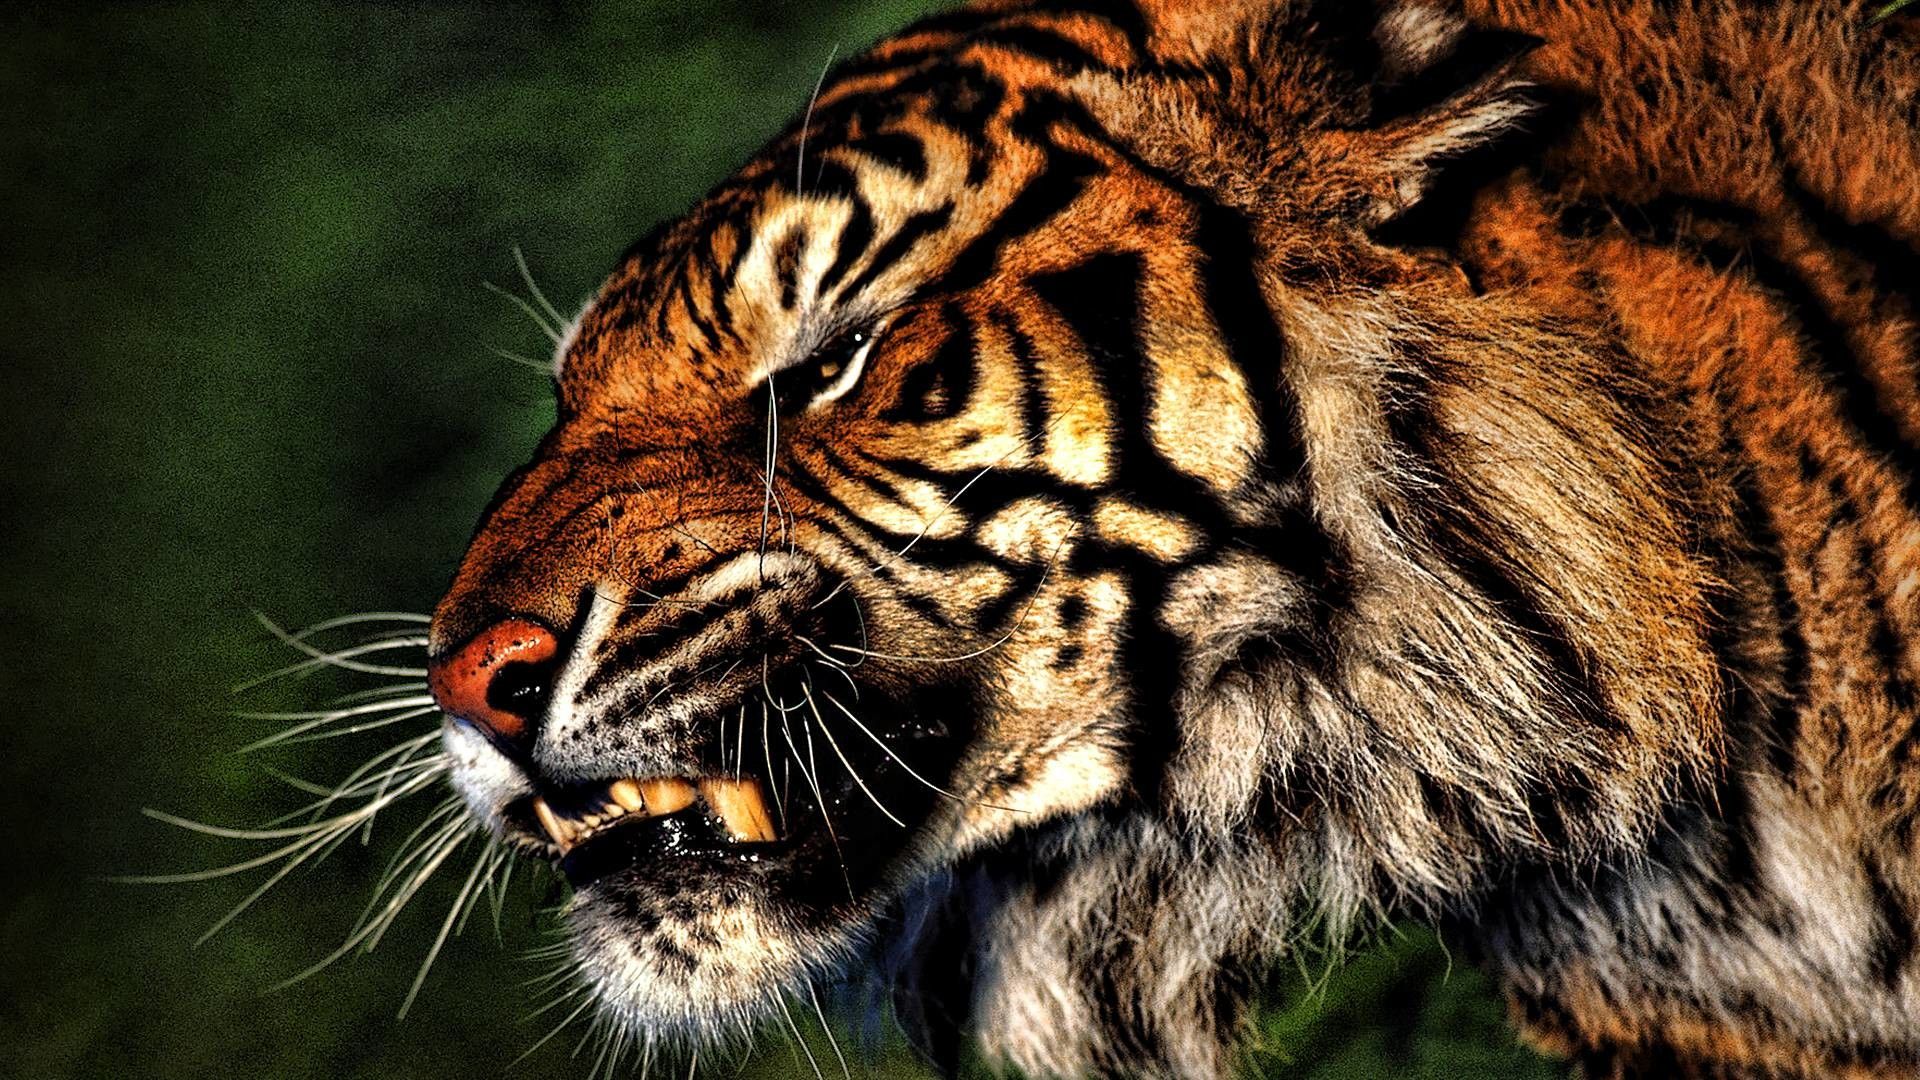 tiger images download